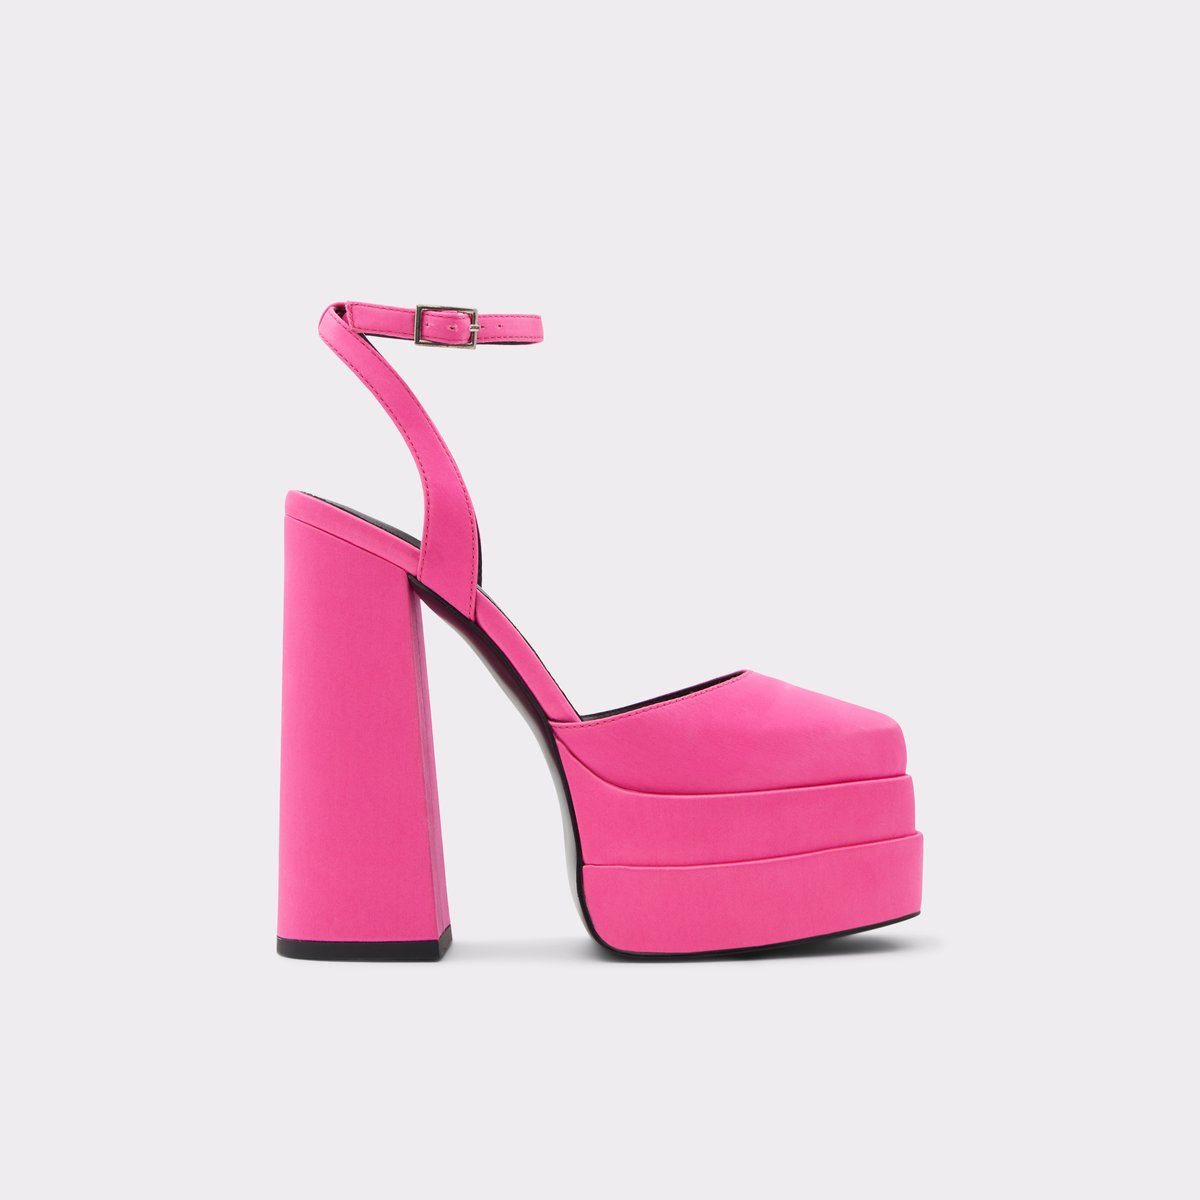 Kersaudy Bright Pink Textile Other Women's Block Heels